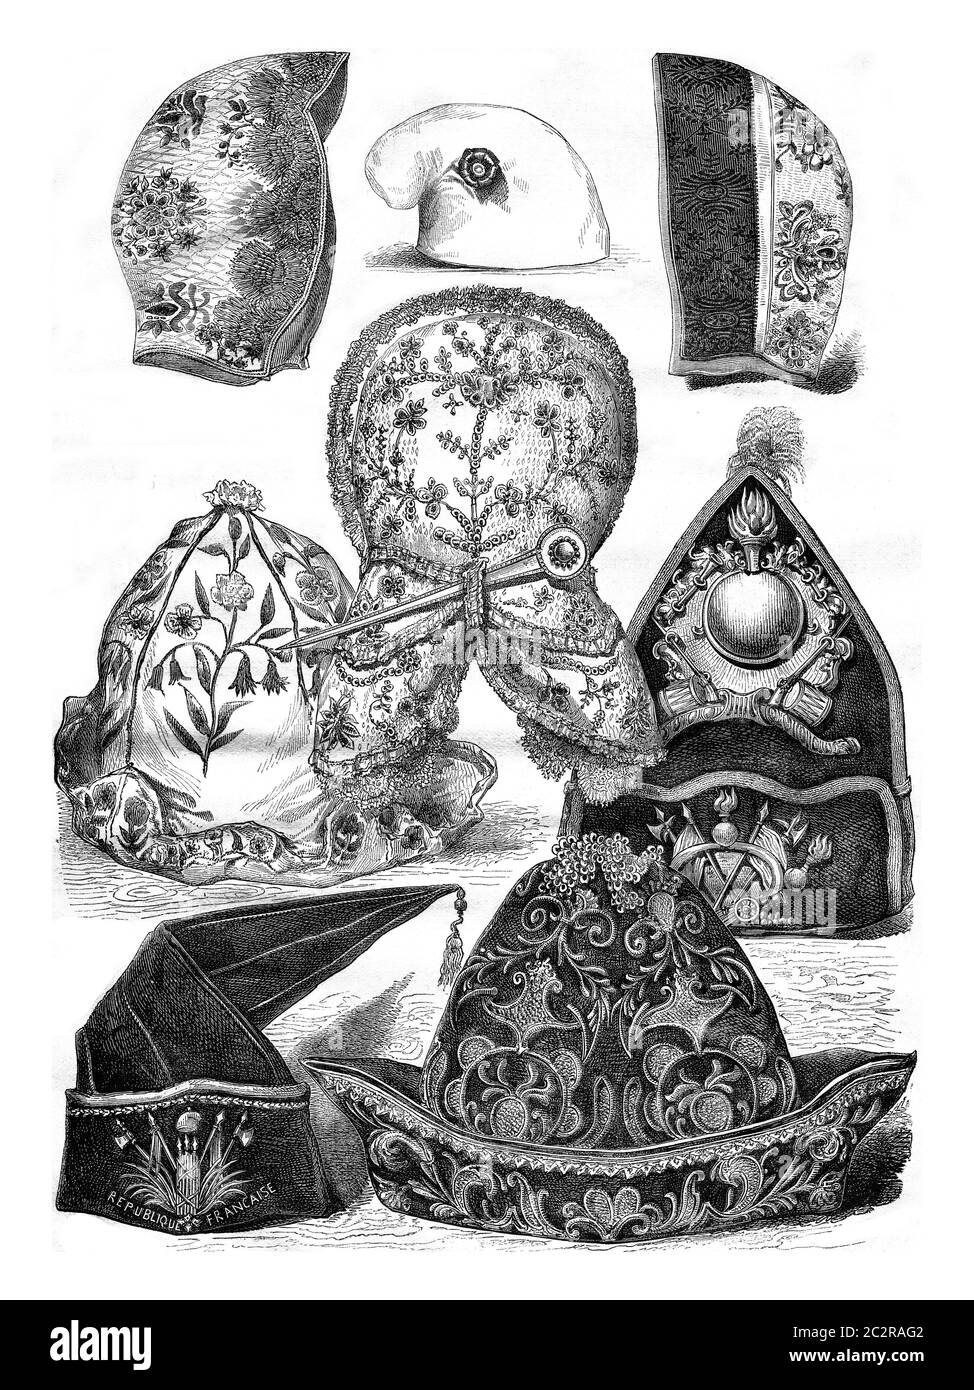 Exposition historique de costume 1874, bonnets et chapeaux, illustration gravée d'époque. Magasin Pittoresque 1876. Banque D'Images